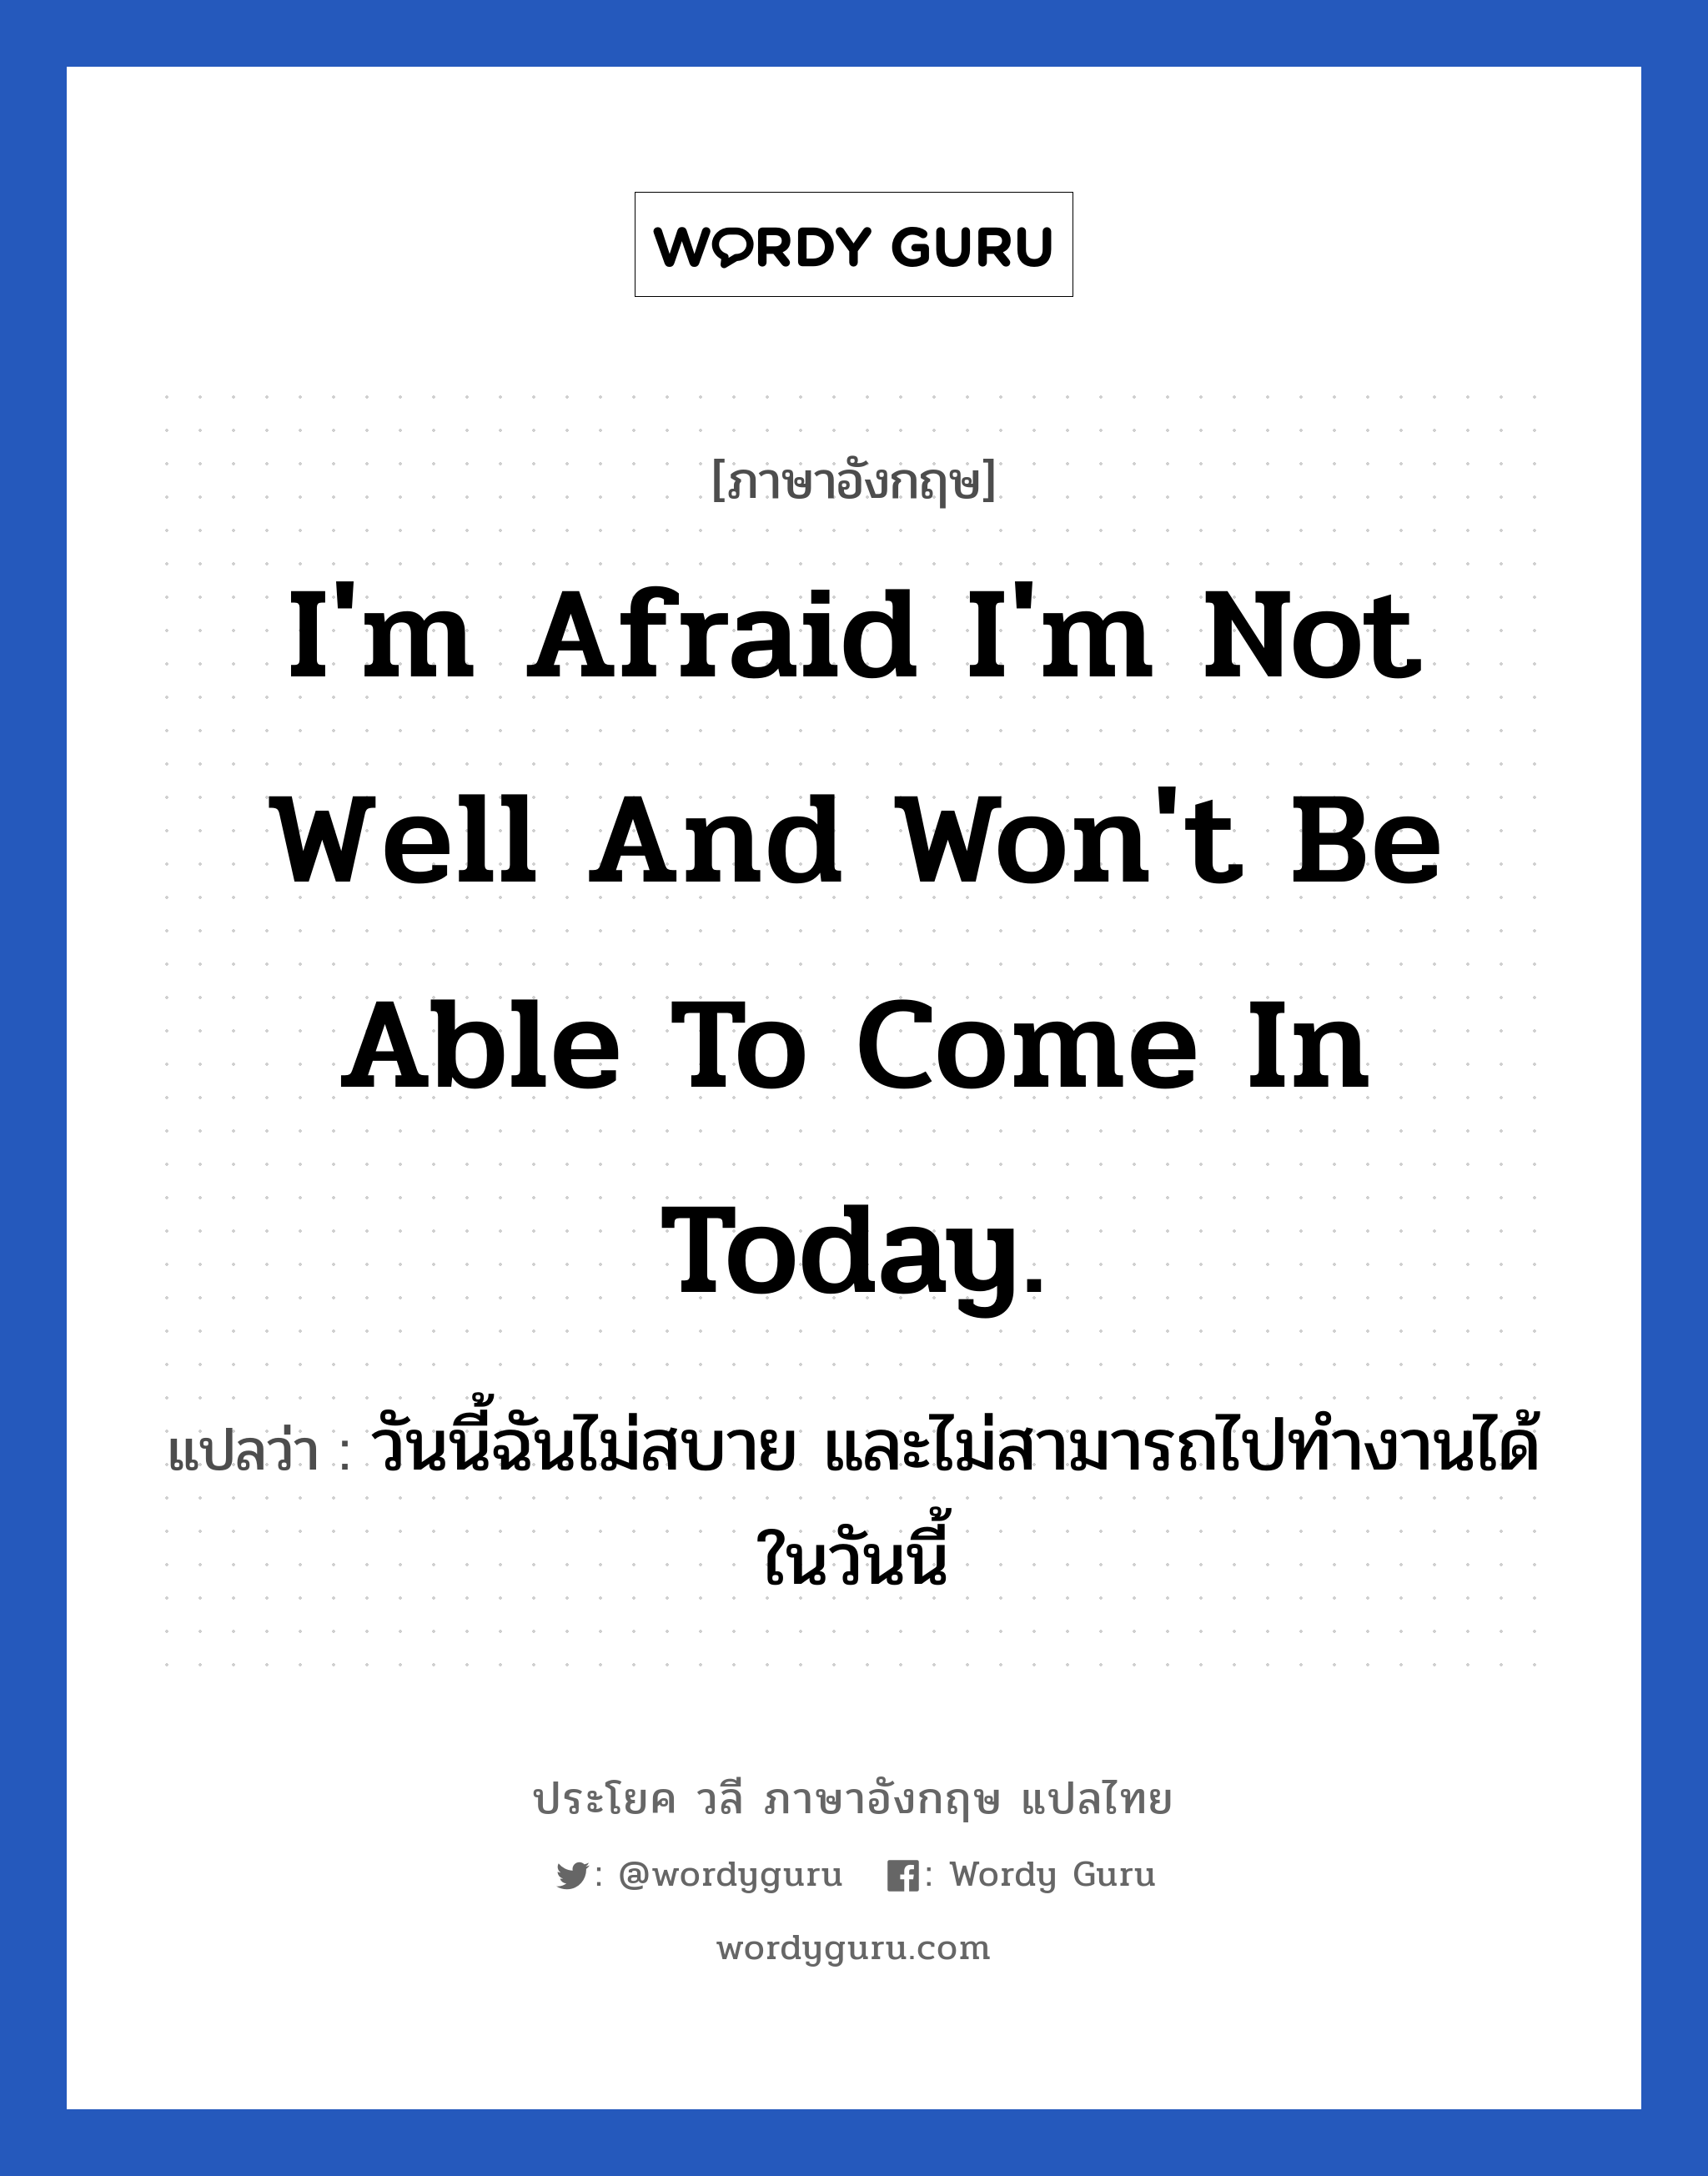 I'm afraid I'm not well and won't be able to come in today. แปลว่า?, วลีภาษาอังกฤษ I'm afraid I'm not well and won't be able to come in today. แปลว่า วันนี้ฉันไม่สบาย และไม่สามารถไปทำงานได้ในวันนี้